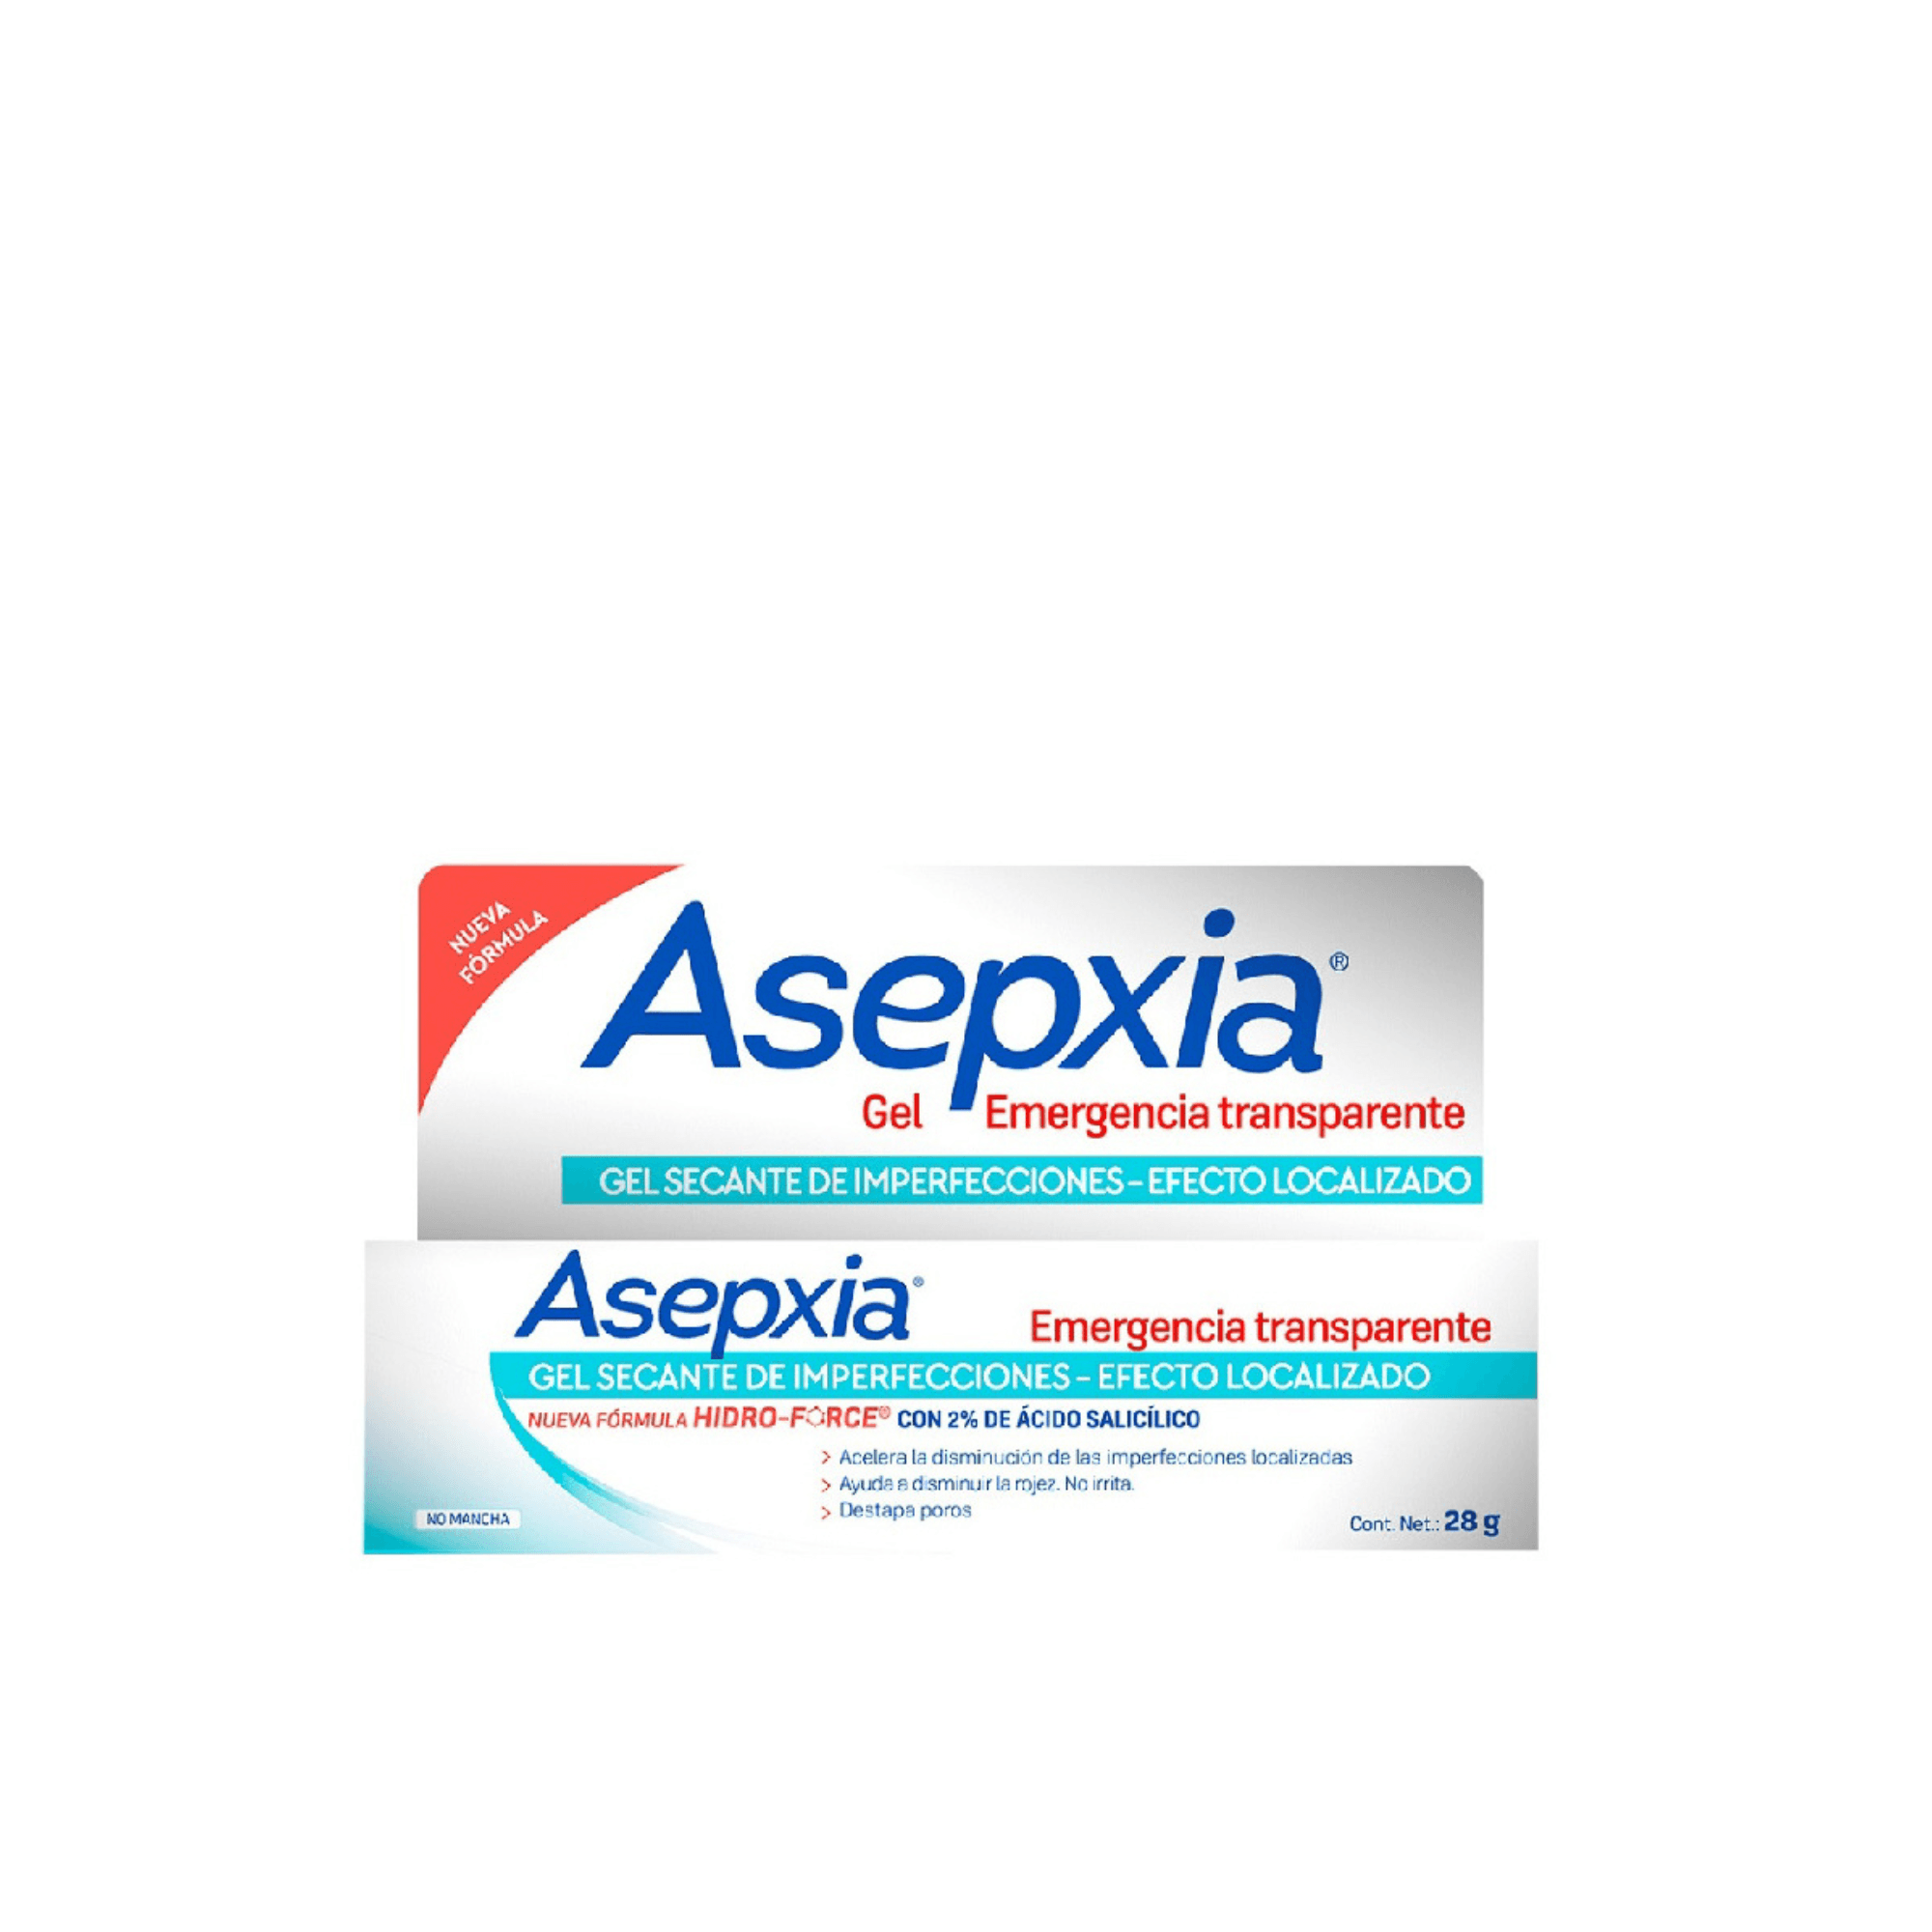 ASEPXIA GEL EMERGENCIA TRANSPARENTE 28 - Farmacia del Pueblo